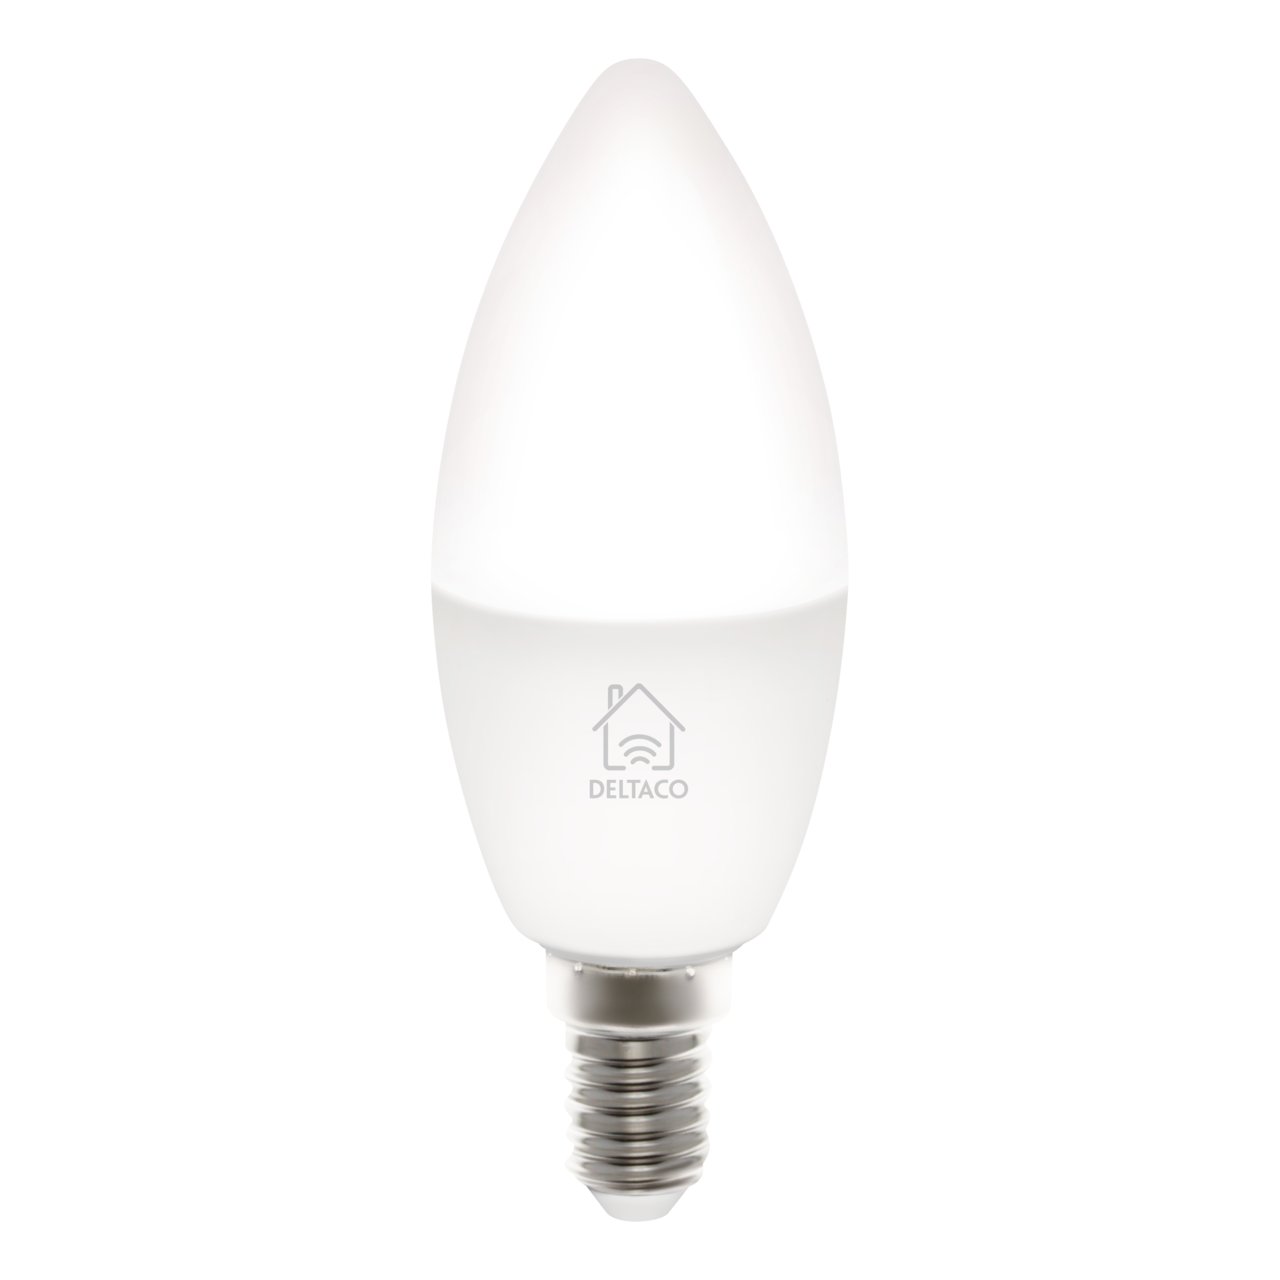 Deltaco Smart Home LED E14 Kerzenform 5W weiß [Energieklasse F] (SH-LE14W)